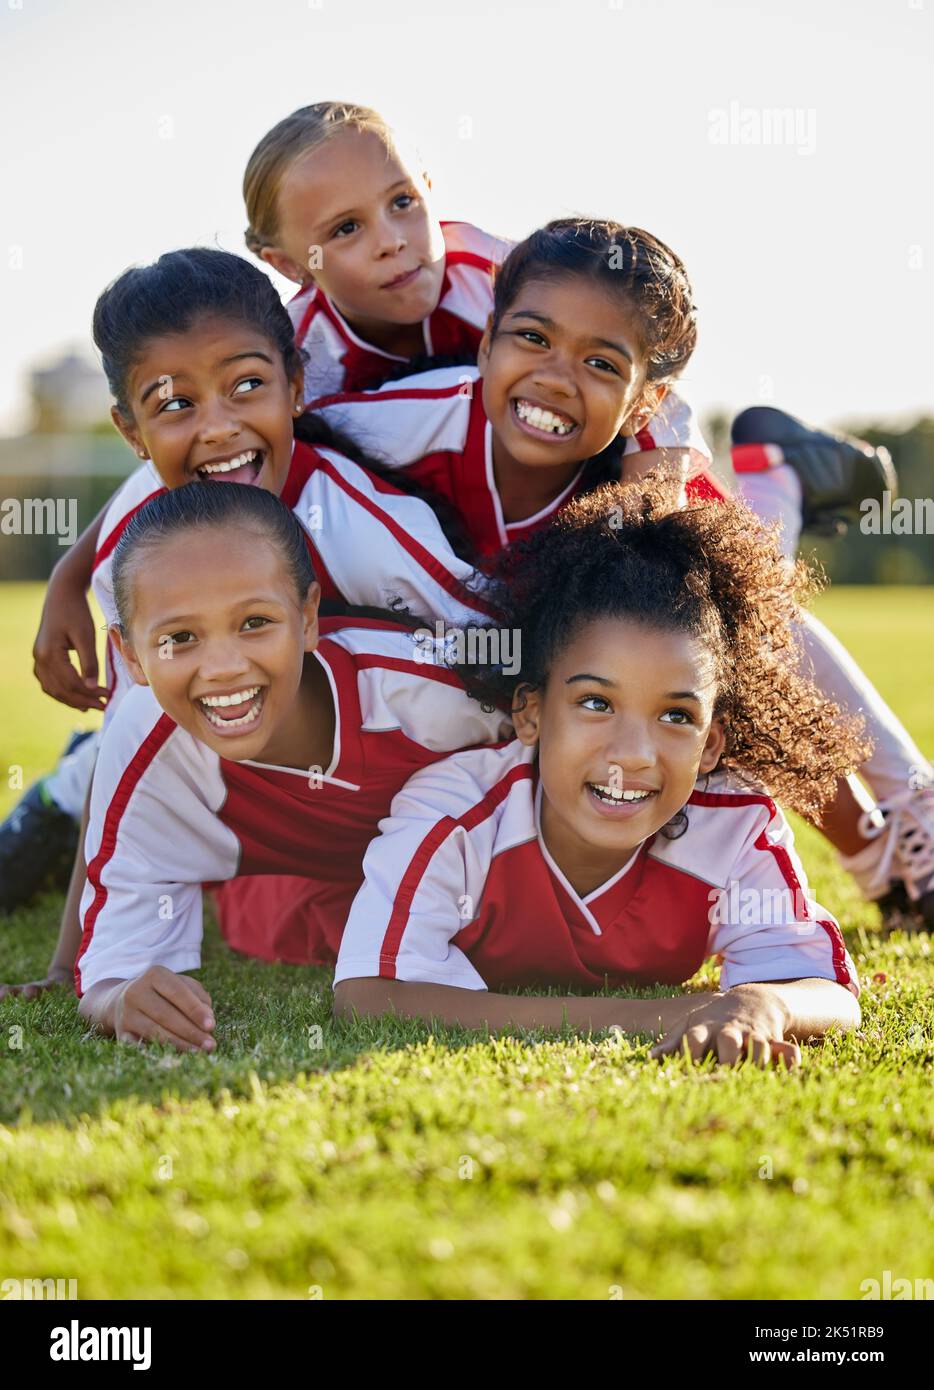 Team, Kinder und glücklich auf dem Feld im Sport nach Sieg in Spiel, Spiel oder Wettbewerb. Mädchen, lächeln und zusammen nach Teamarbeit im Fußball, Fußball oder Stockfoto